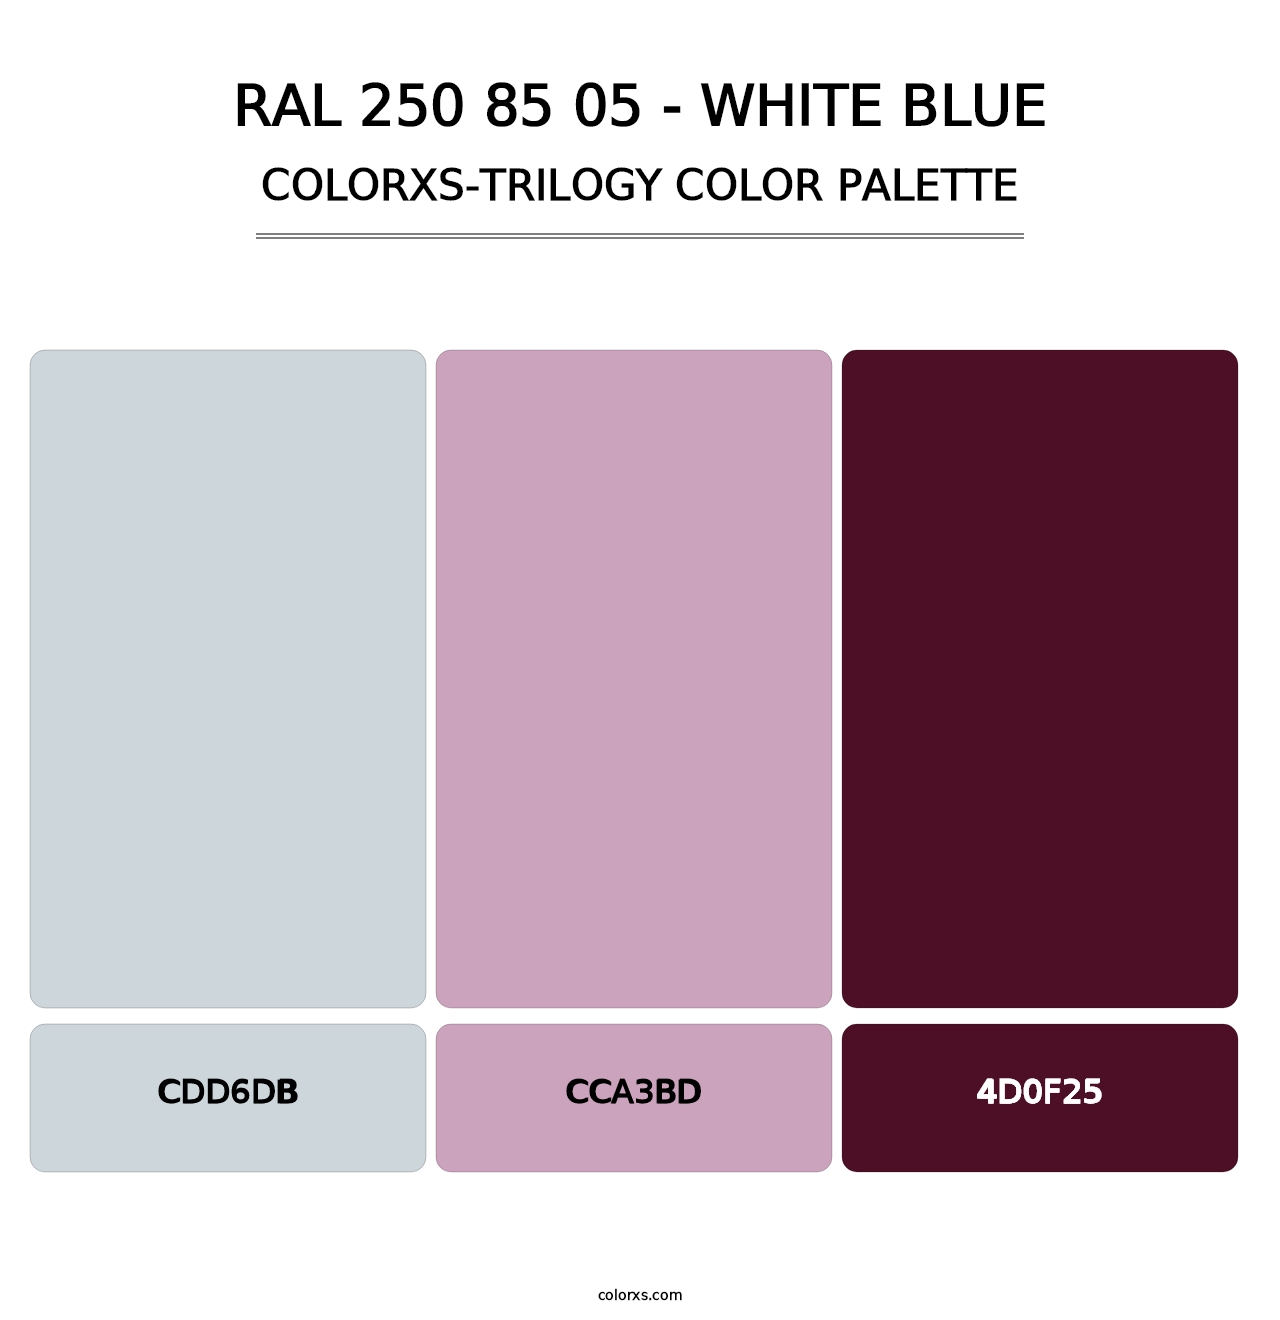 RAL 250 85 05 - White Blue - Colorxs Trilogy Palette